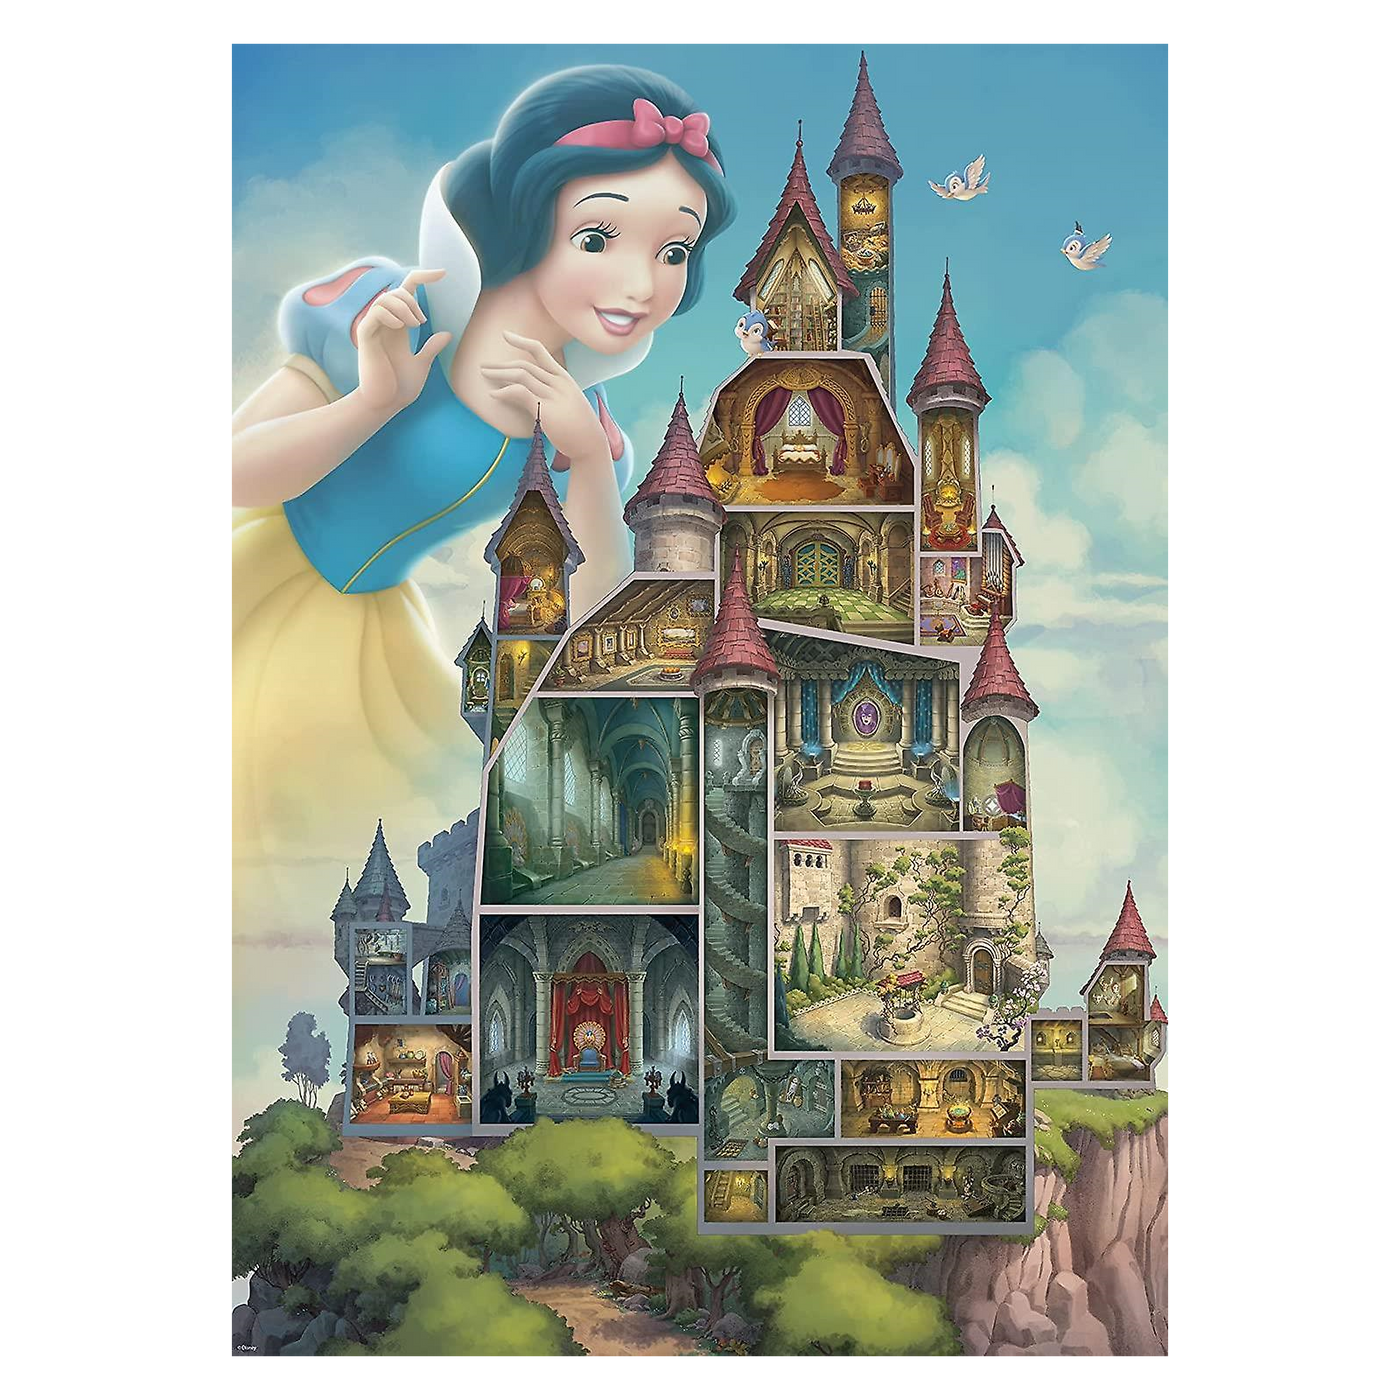 Snow White Castle - 1000 brikker